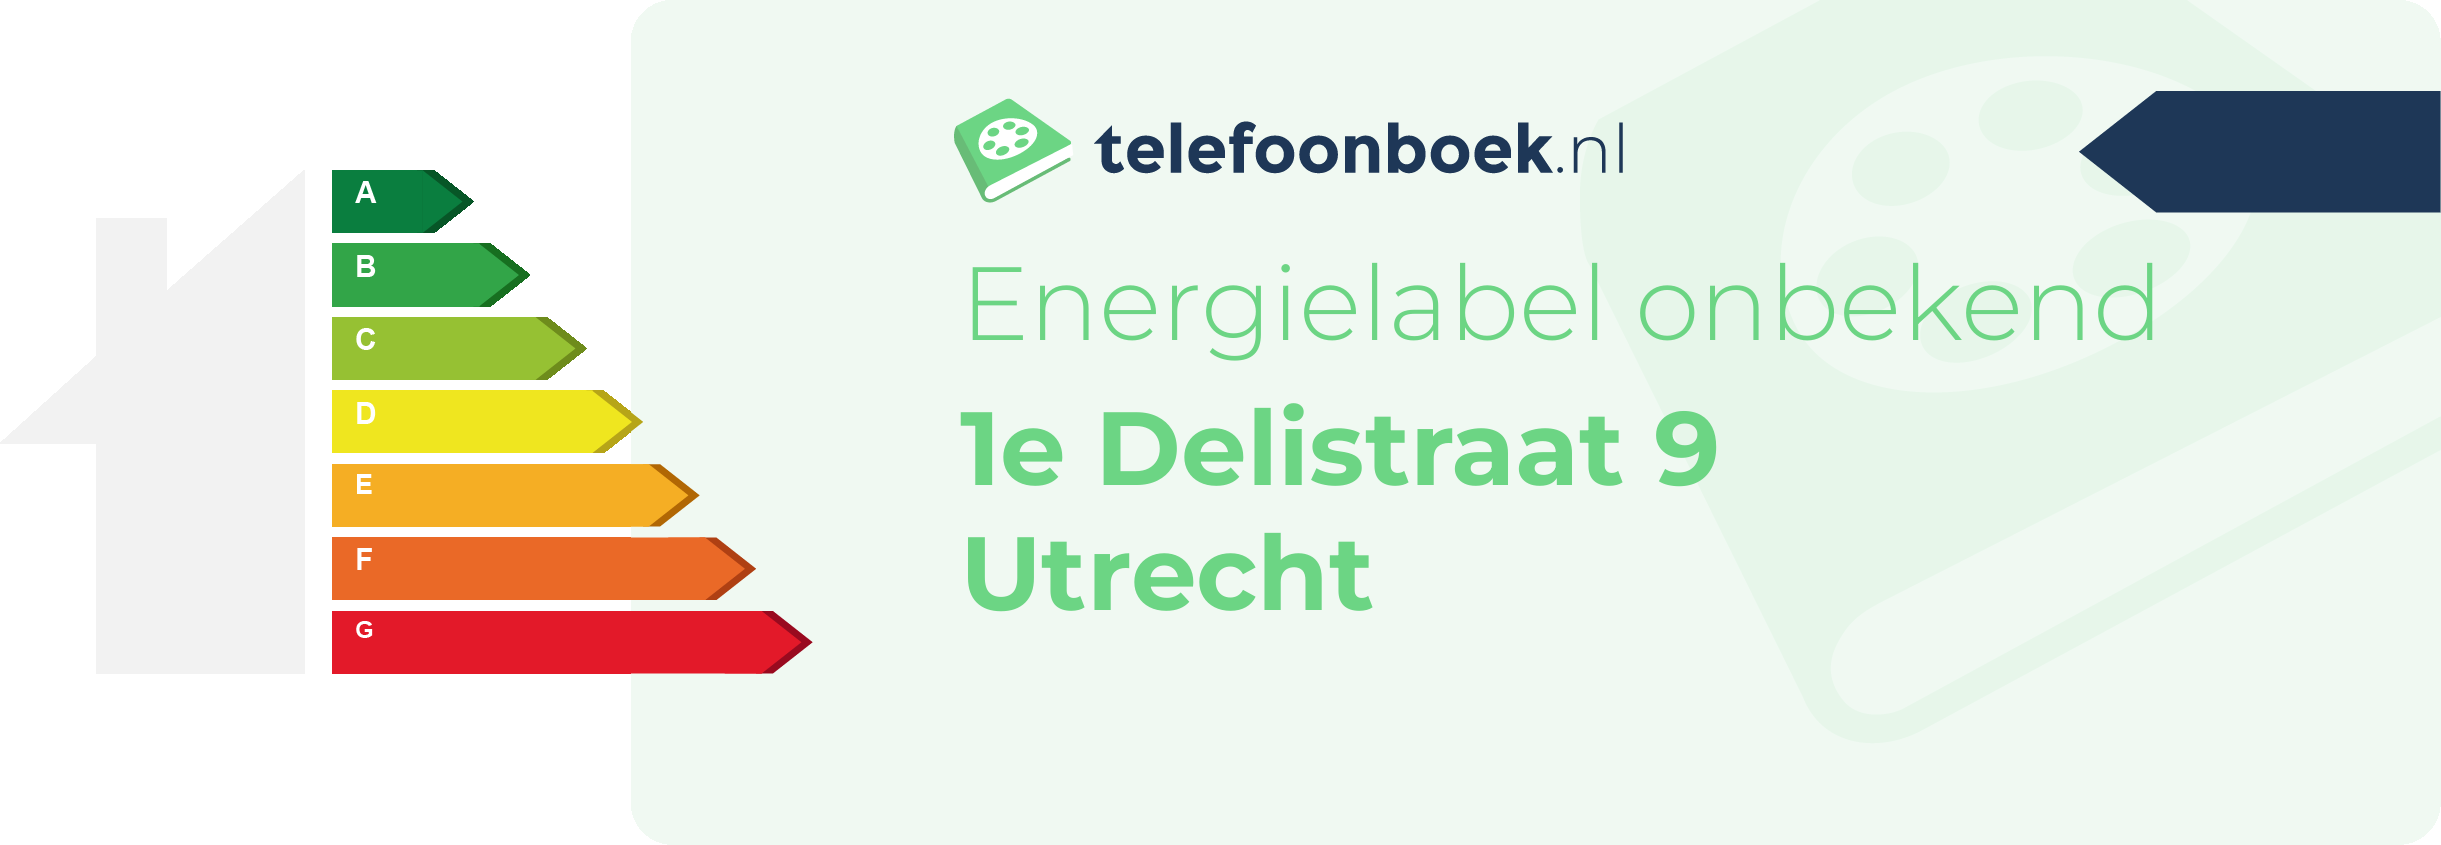 Energielabel 1e Delistraat 9 Utrecht